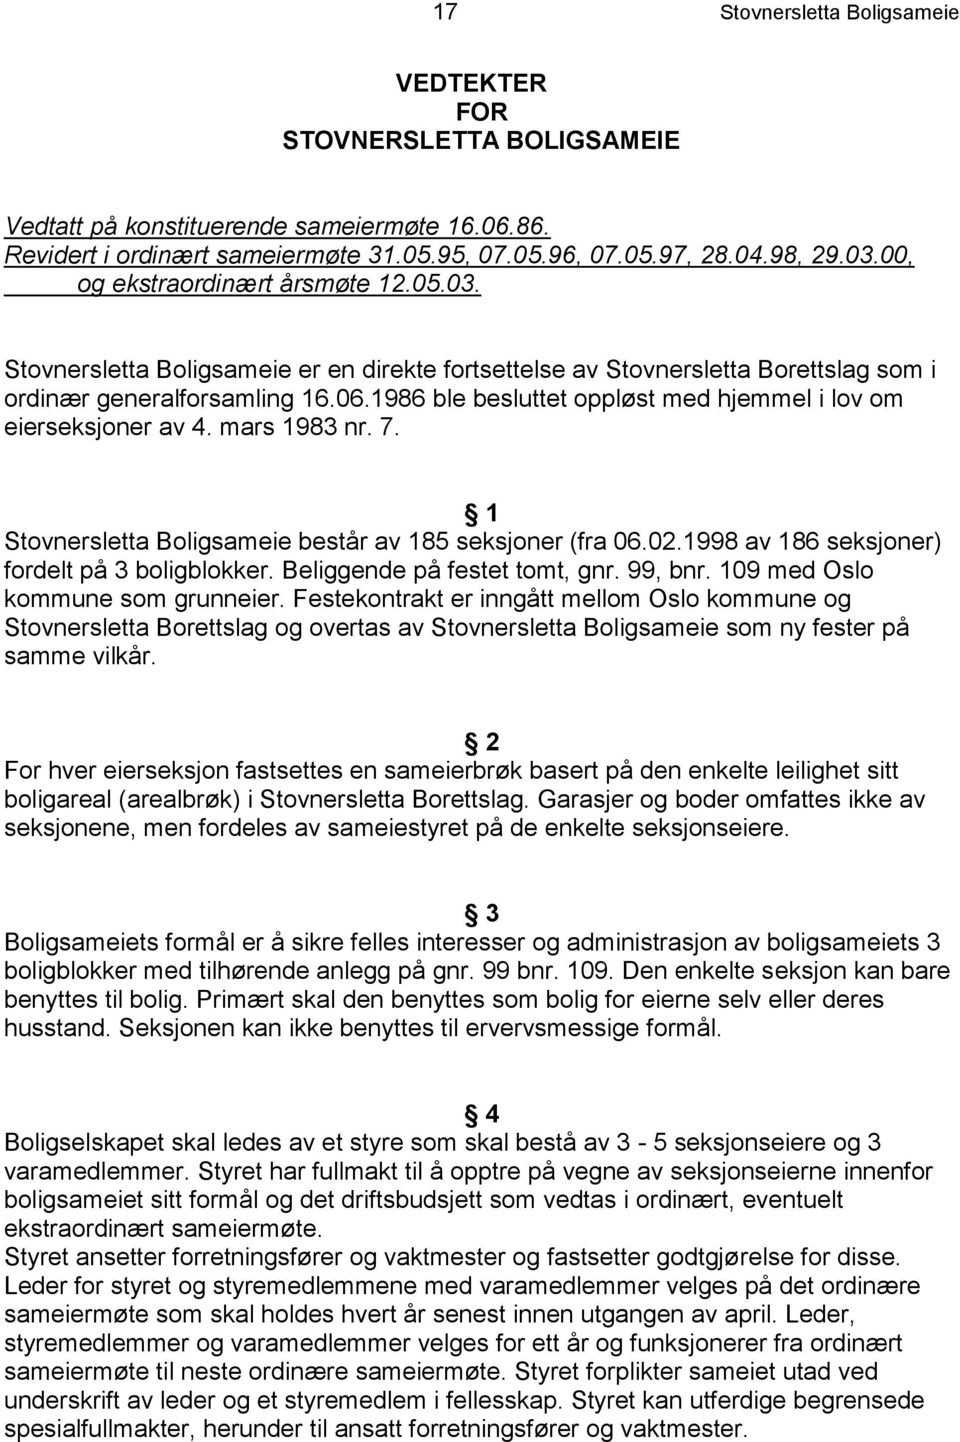 1986 ble besluttet oppløst med hjemmel i lov om eierseksjoner av 4. mars 1983 nr. 7. 1 Stovnersletta Boligsameie består av 185 seksjoner (fra 06.02.1998 av 186 seksjoner) fordelt på 3 boligblokker.